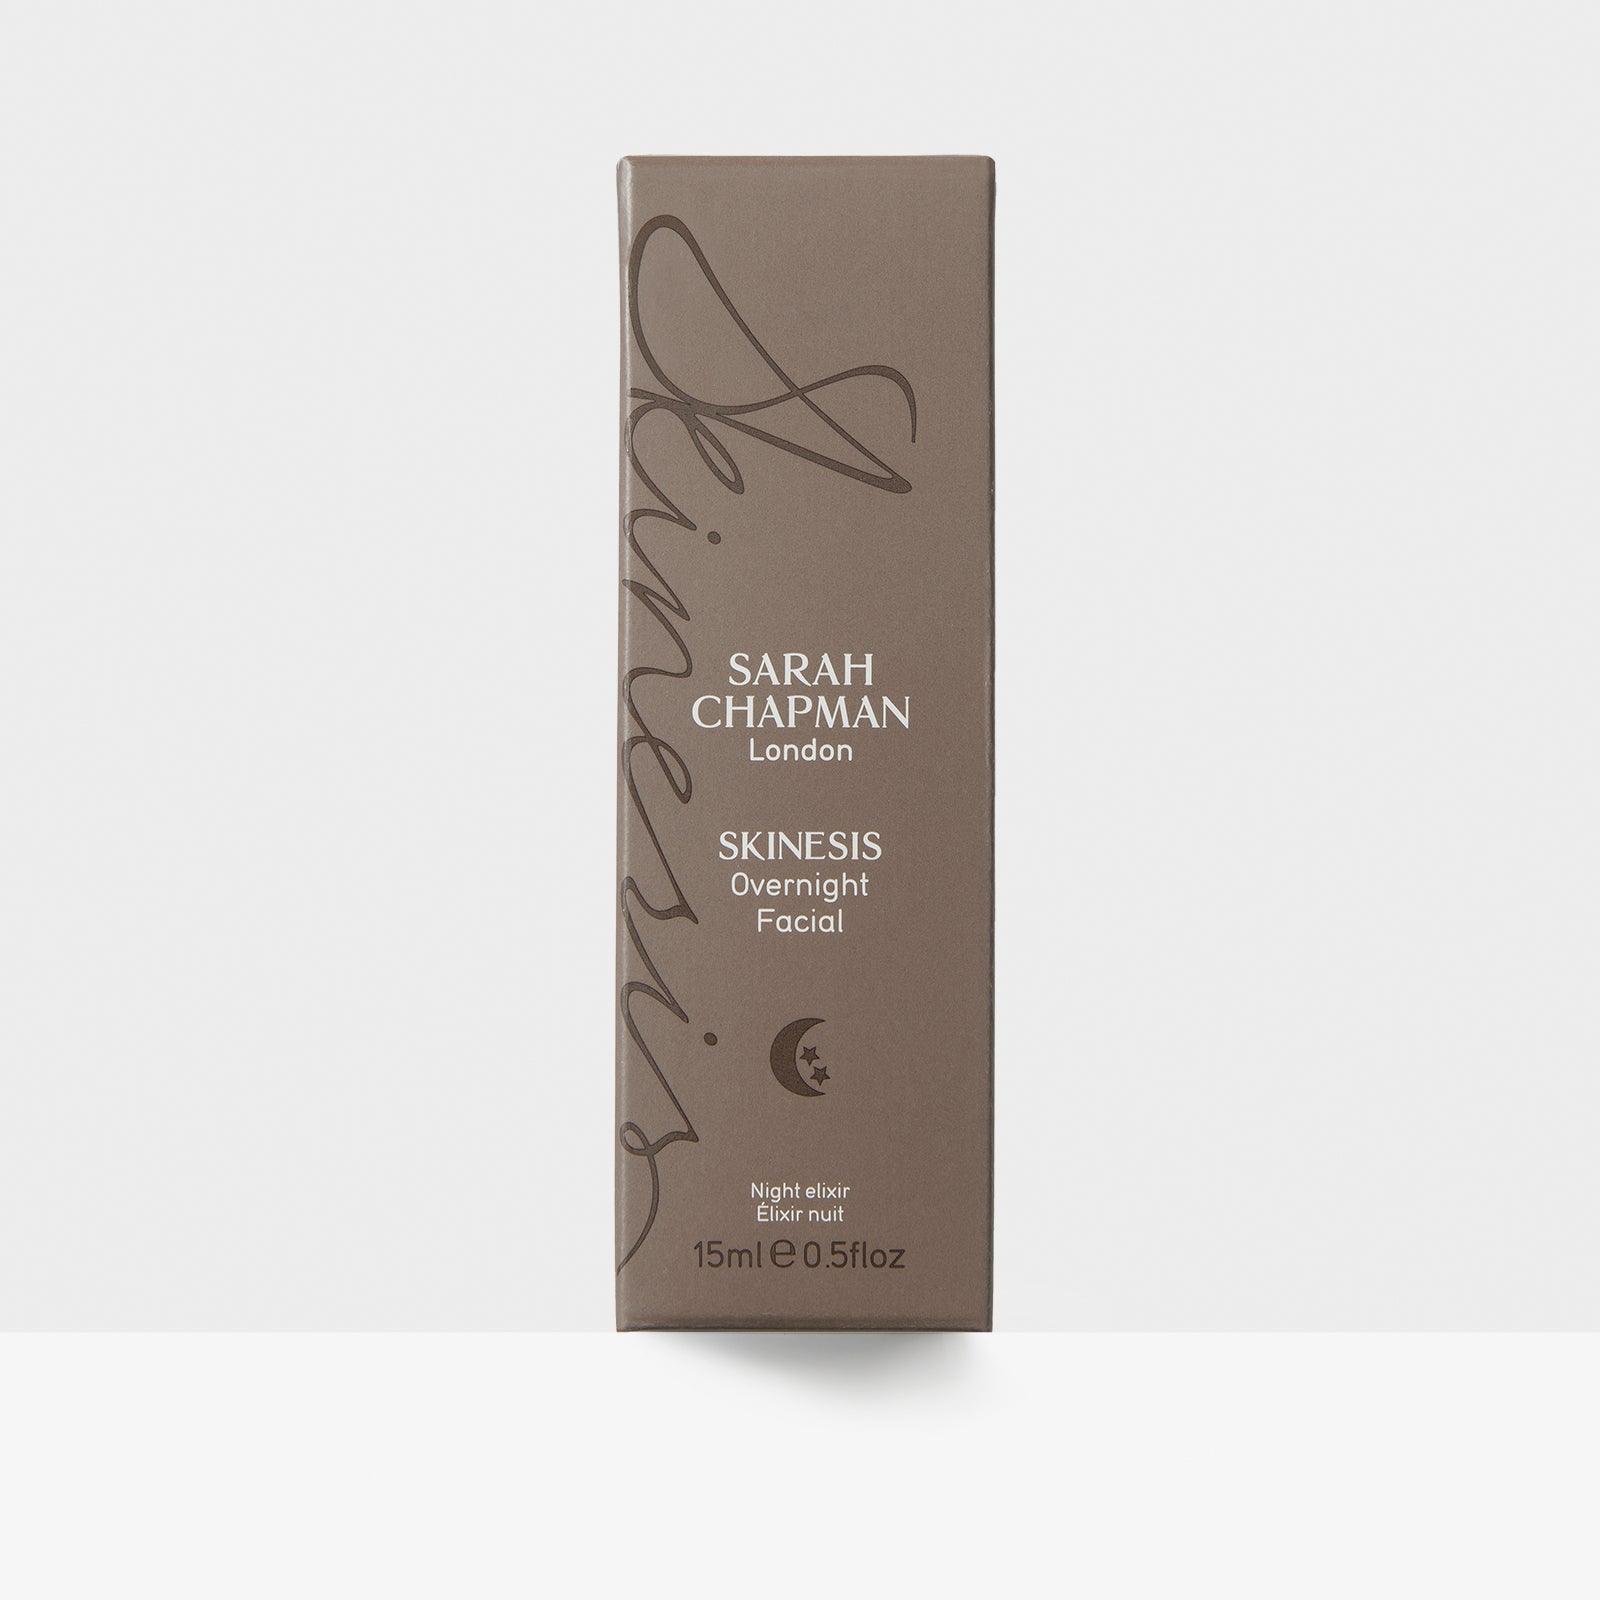 Overnight Facial Night Elixir Facial Oil Serum Outer Packaging - Sarah Chapman Skinesis